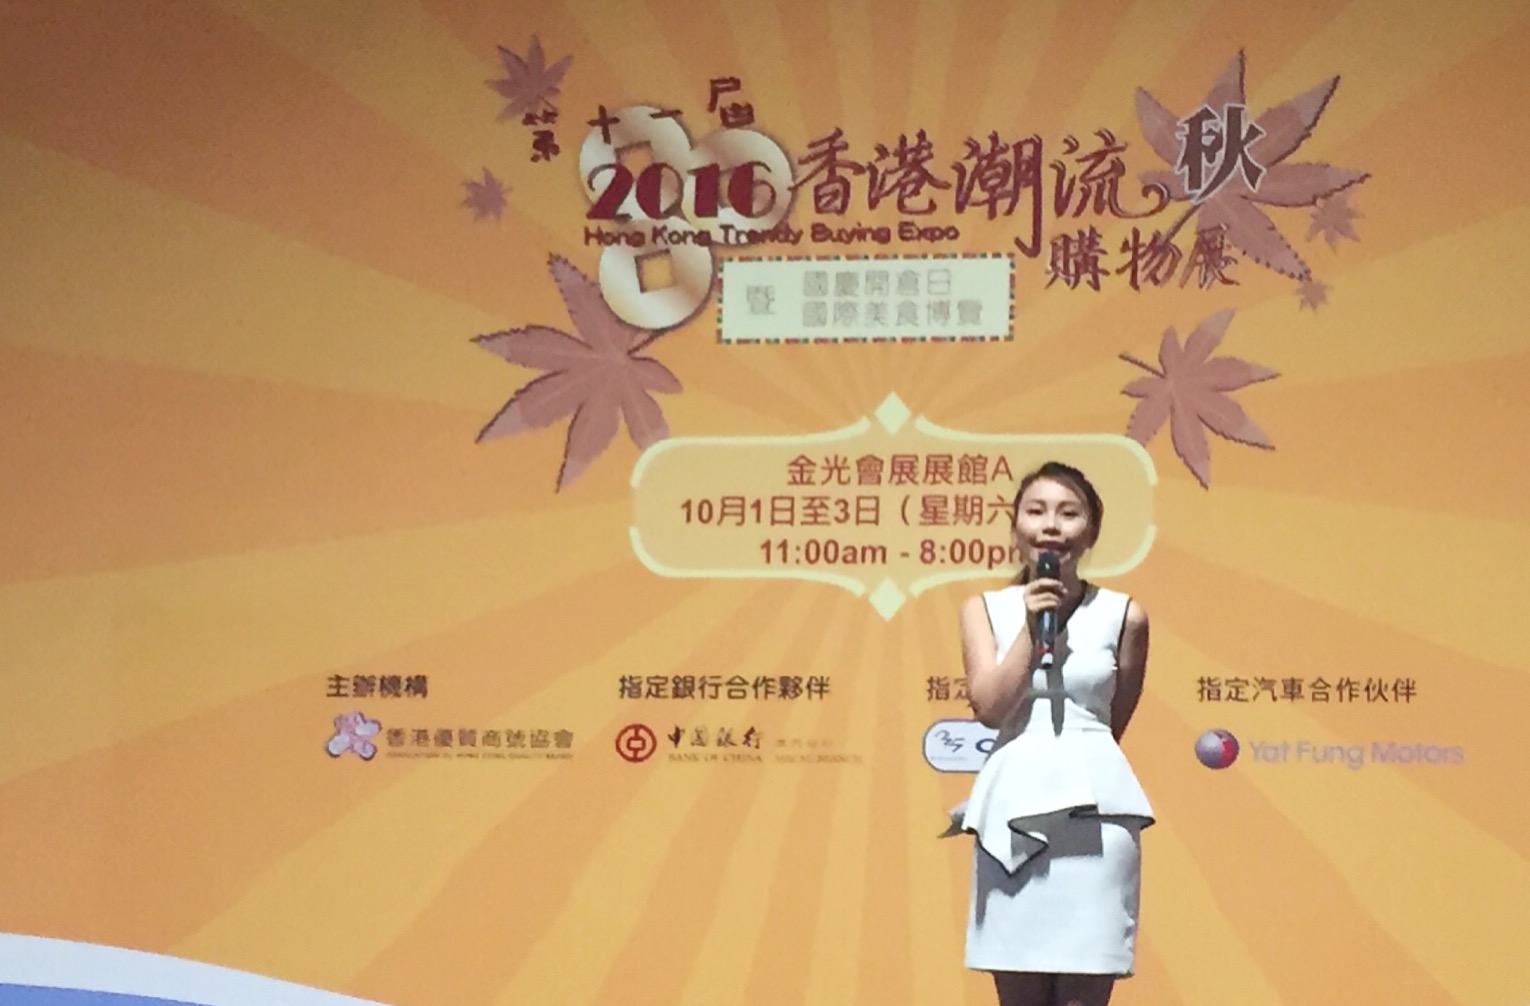 MC Jasmine Ky 何嘉慧司儀工作紀錄: 香港潮流購物展及美食博覽2016（澳門威尼斯人）